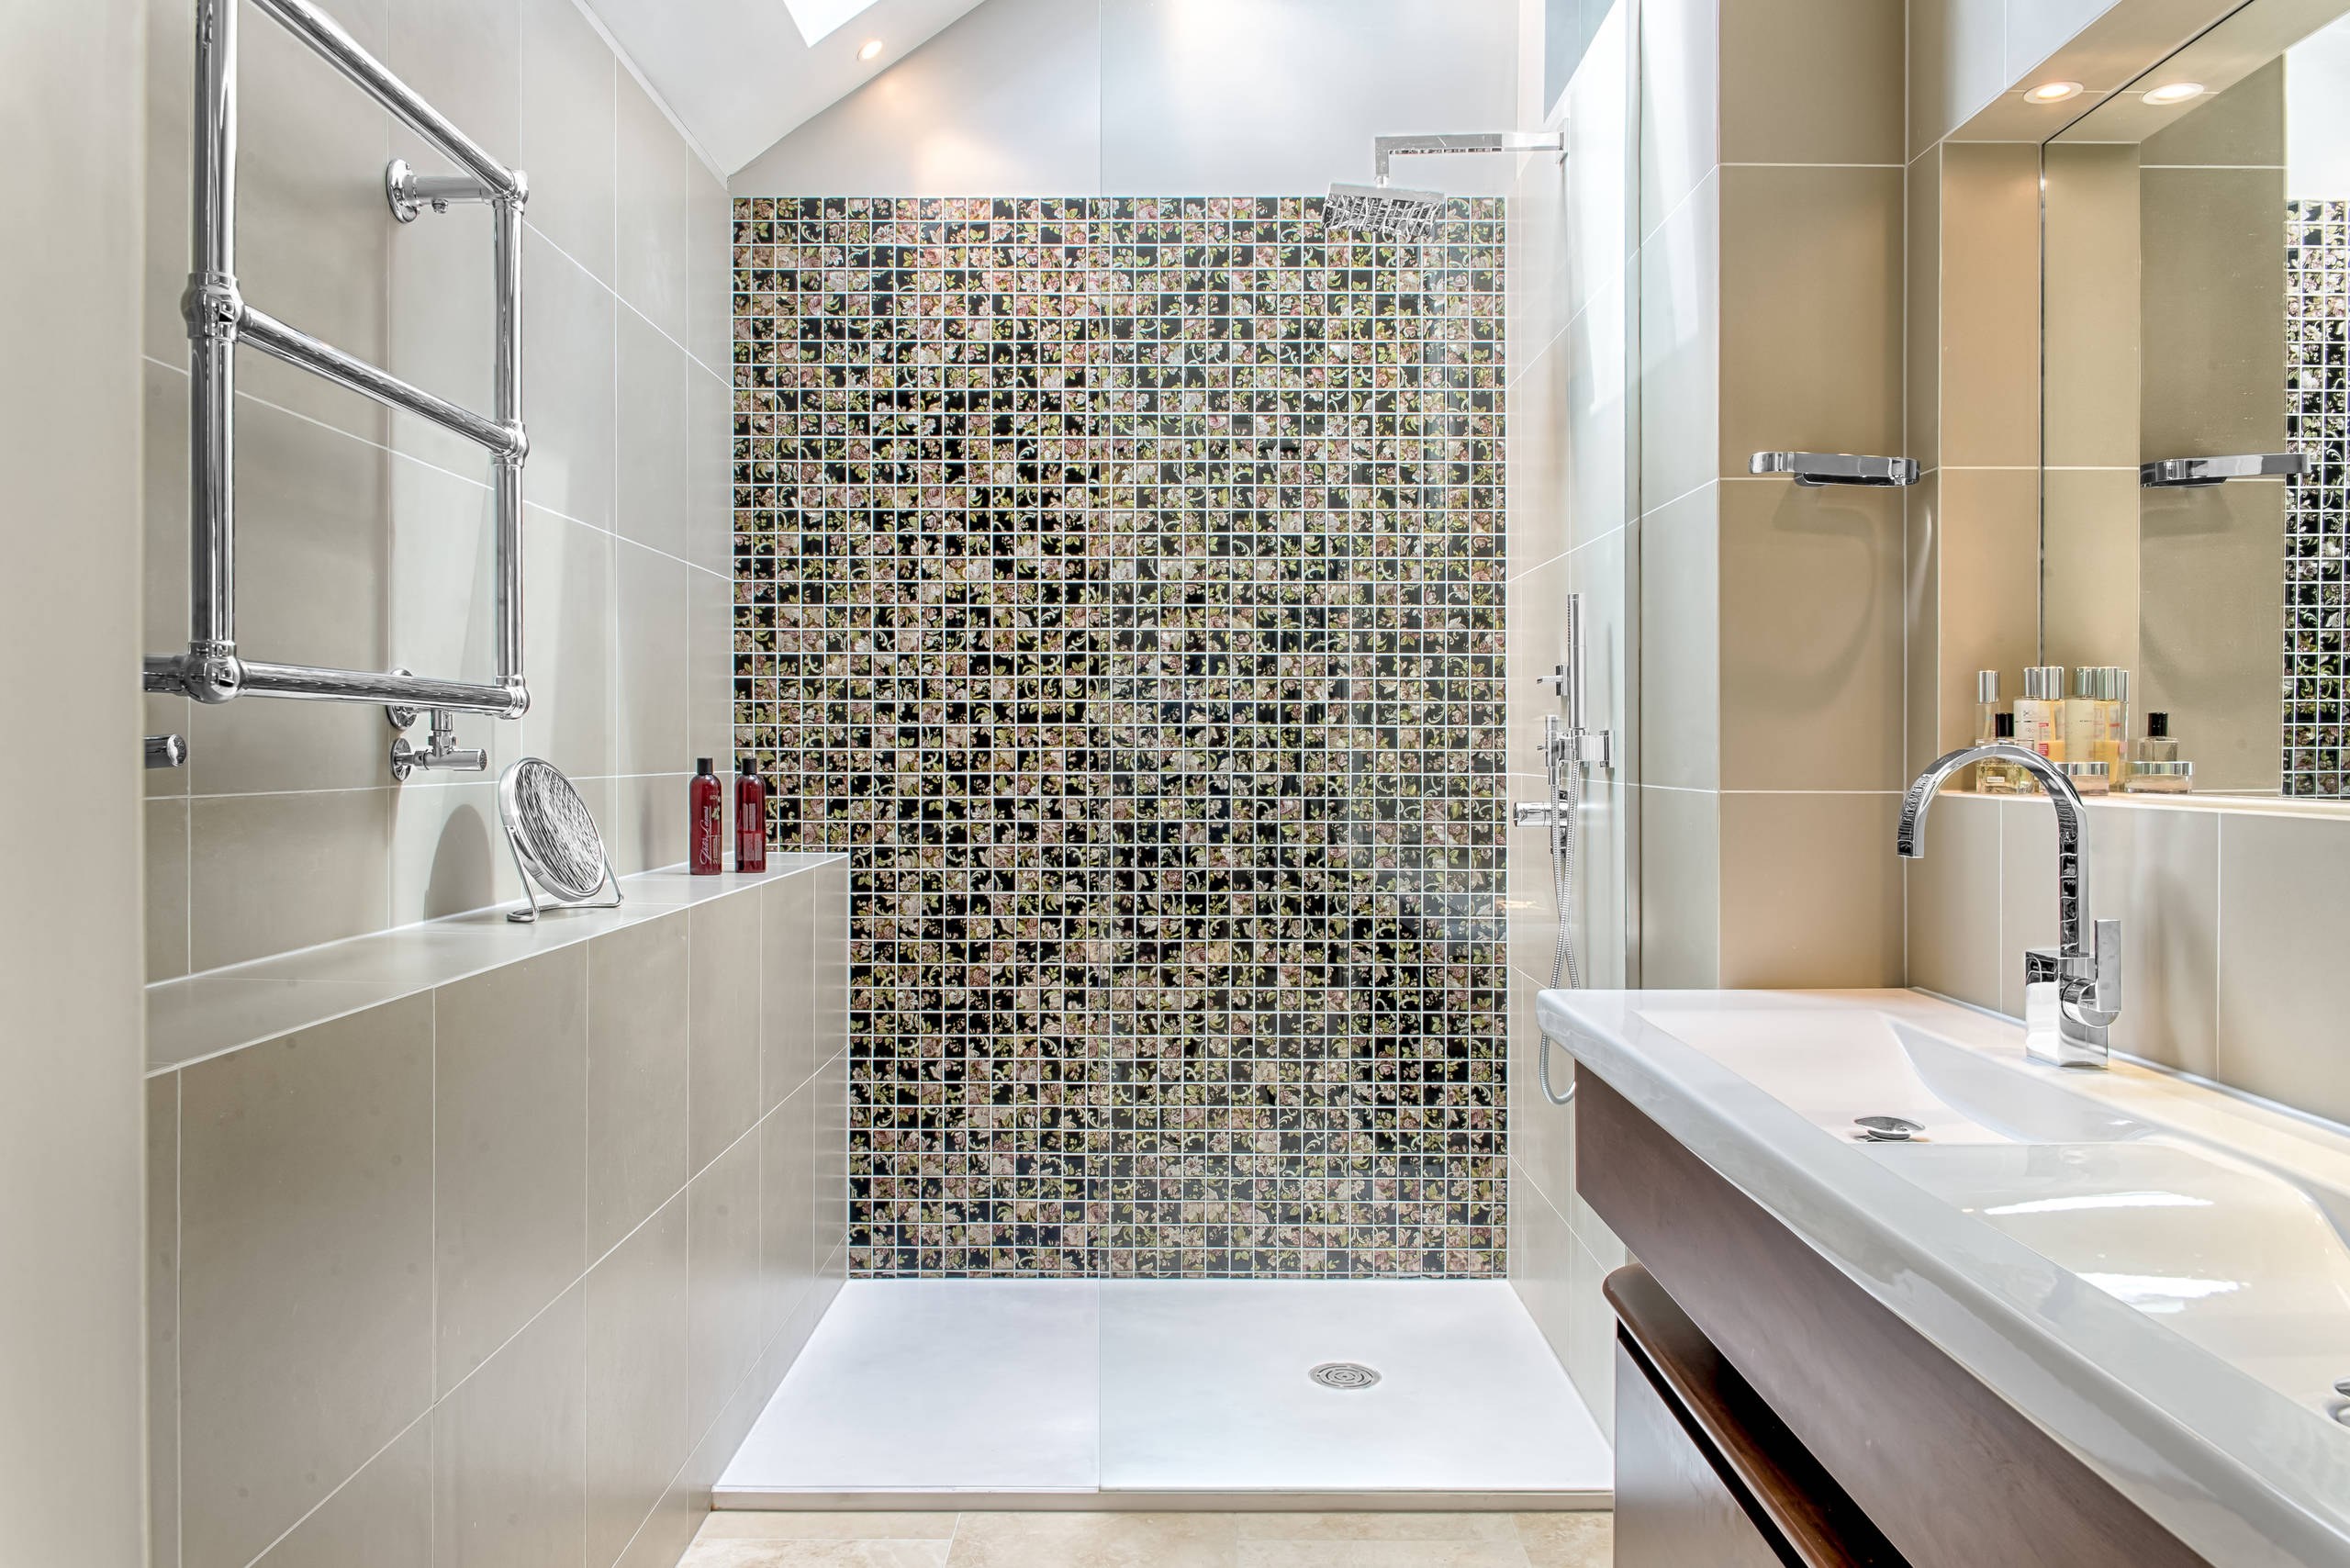 Мозаика для ванной plitka mosaica ru. Мозаика в интерьере ванной комнаты. Мелкая плитка для ванной комнаты. Ванная с мозаичной плиткой. Современная плитка для ванной.